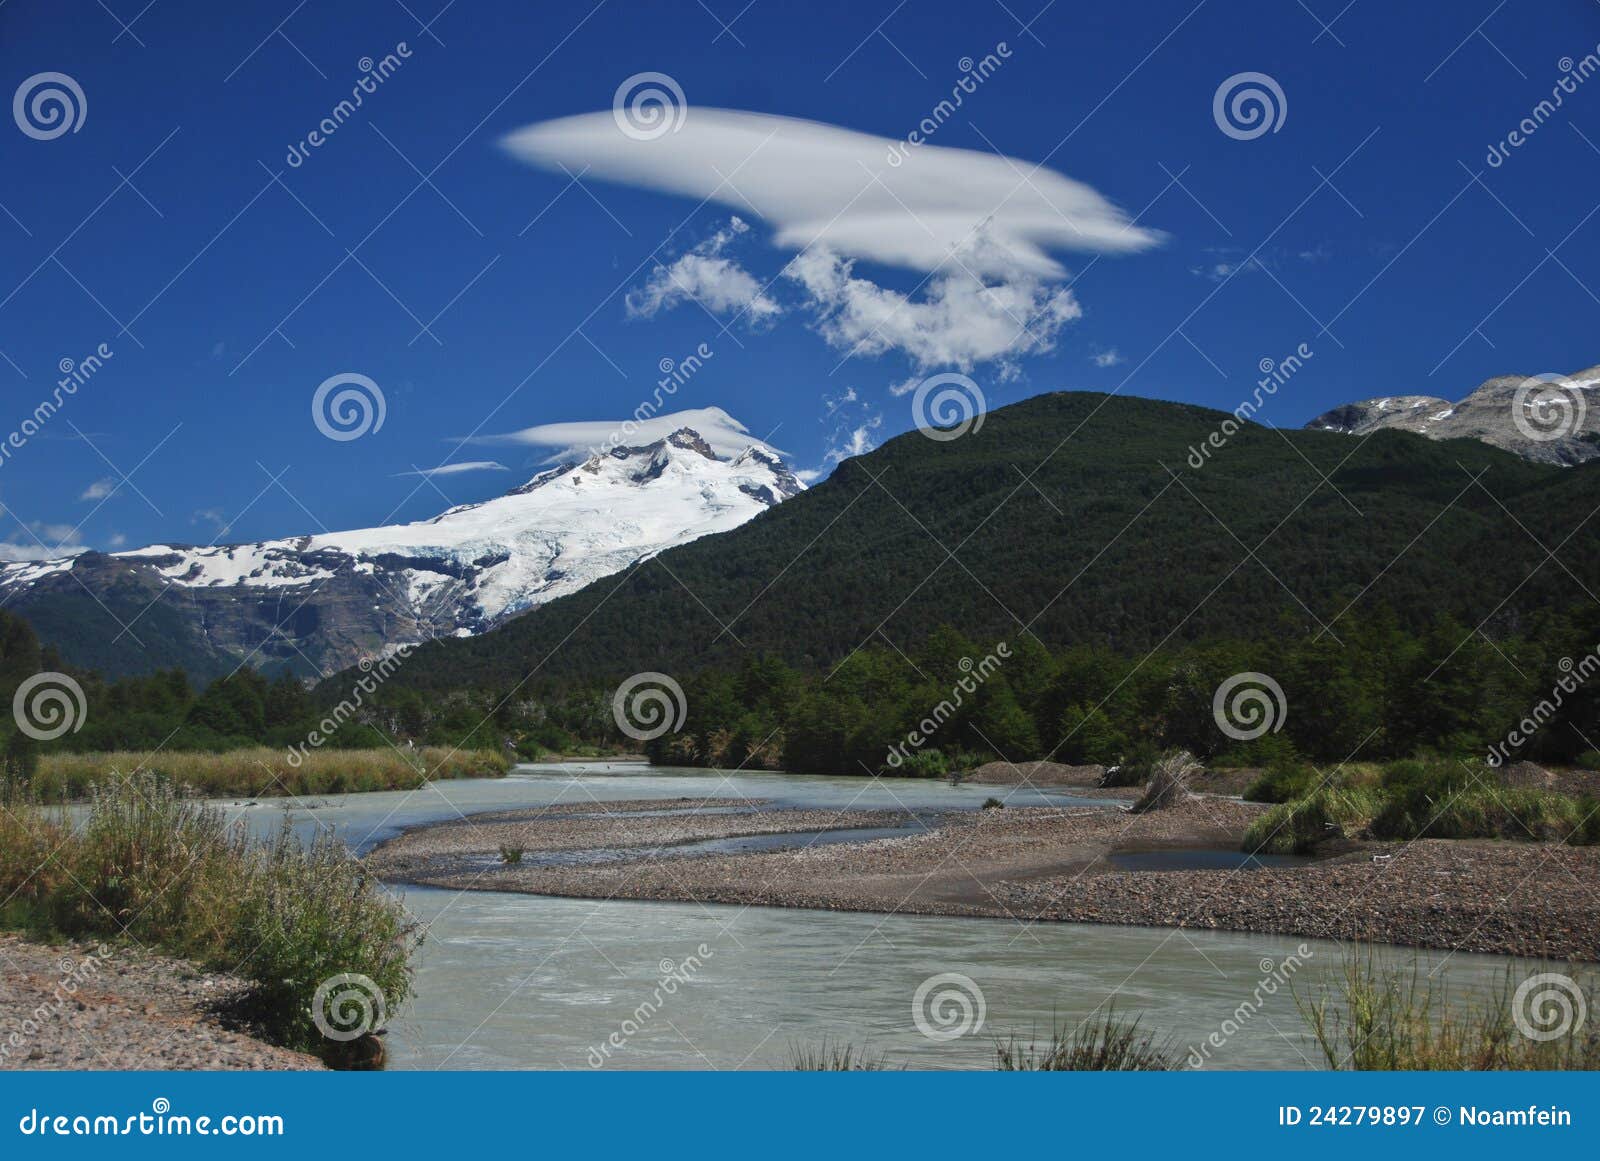 tronador mountain - argentina